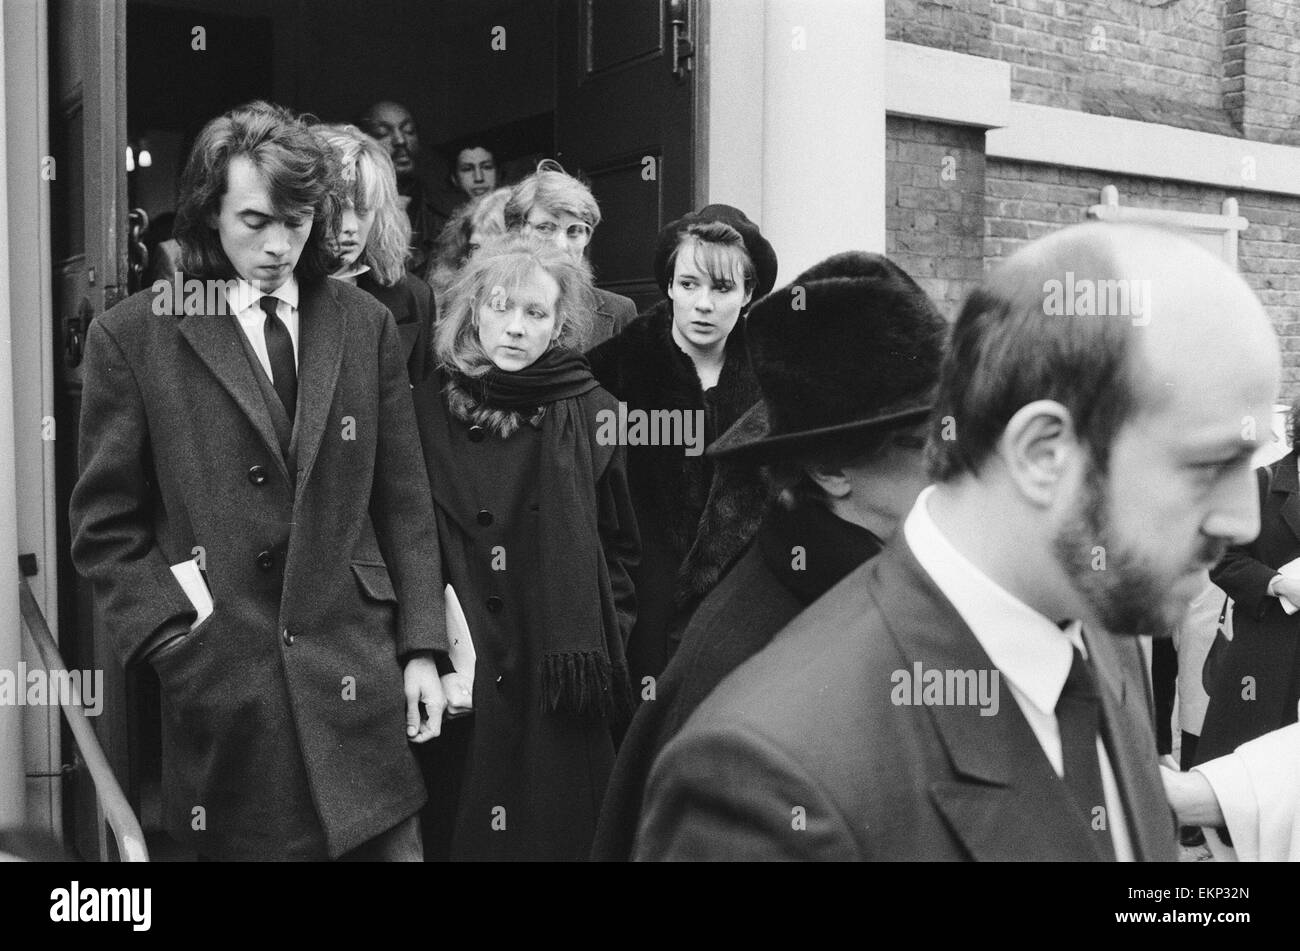 Totenmesse für Irish Rock star Phil Lynott, lead-Sänger von Thin Lizzy, statt an einer Kirche in Richmond, Surrey. Trauergäste verlassen die Kirche nach dem Gottesdienst. 9. Januar 1986. Stockfoto